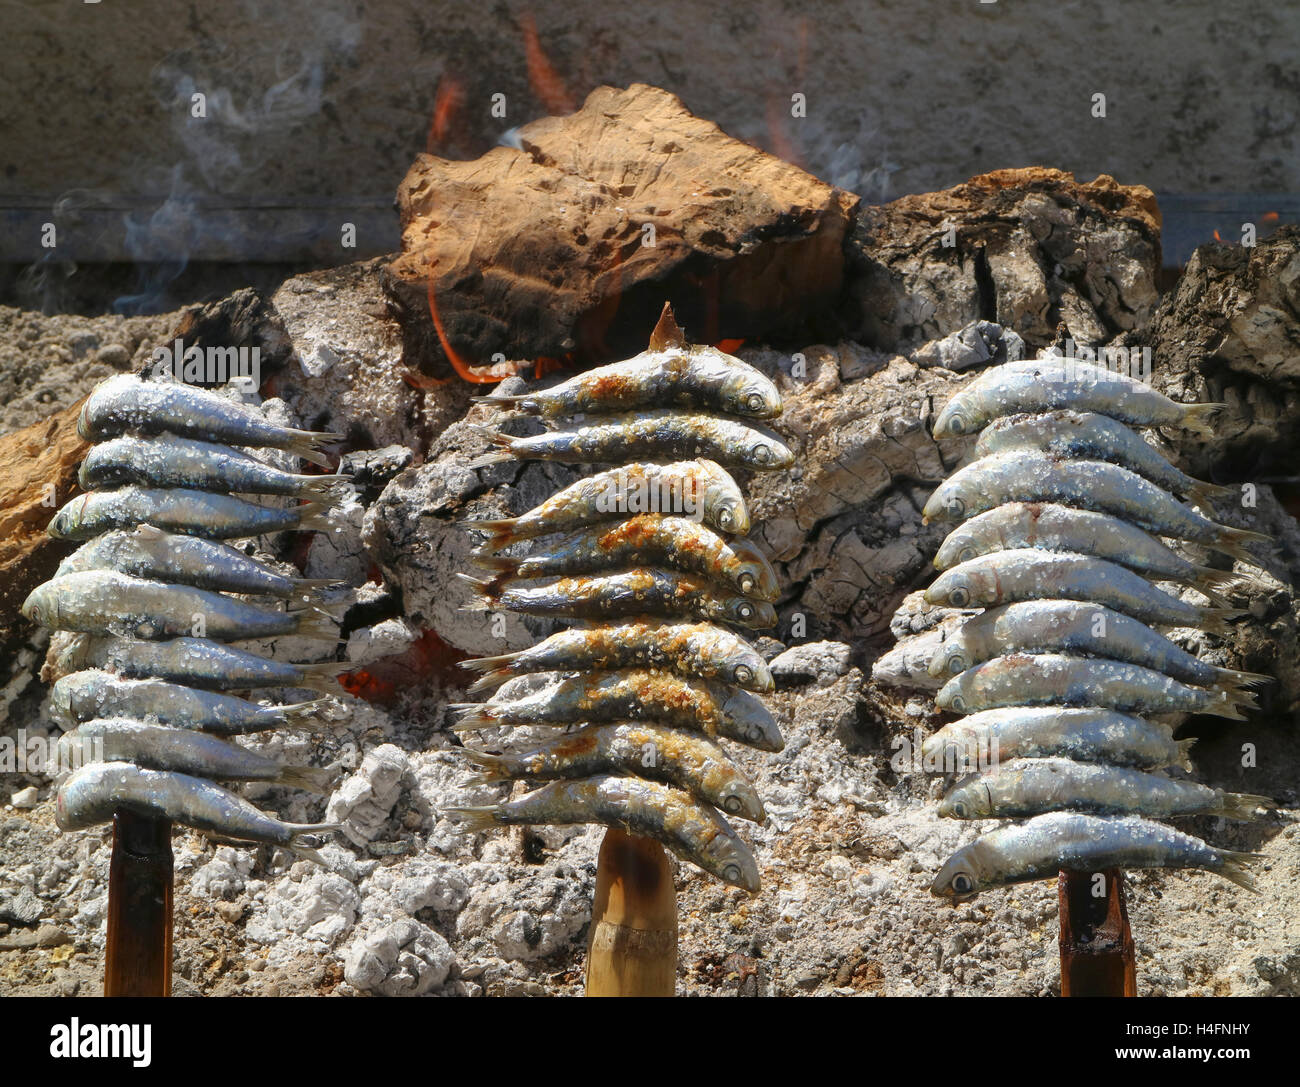 Brochettes, ou espetos, de sardines grillées sur un feu ouvert. Plat typique de la Méditerranée espagnole. Banque D'Images